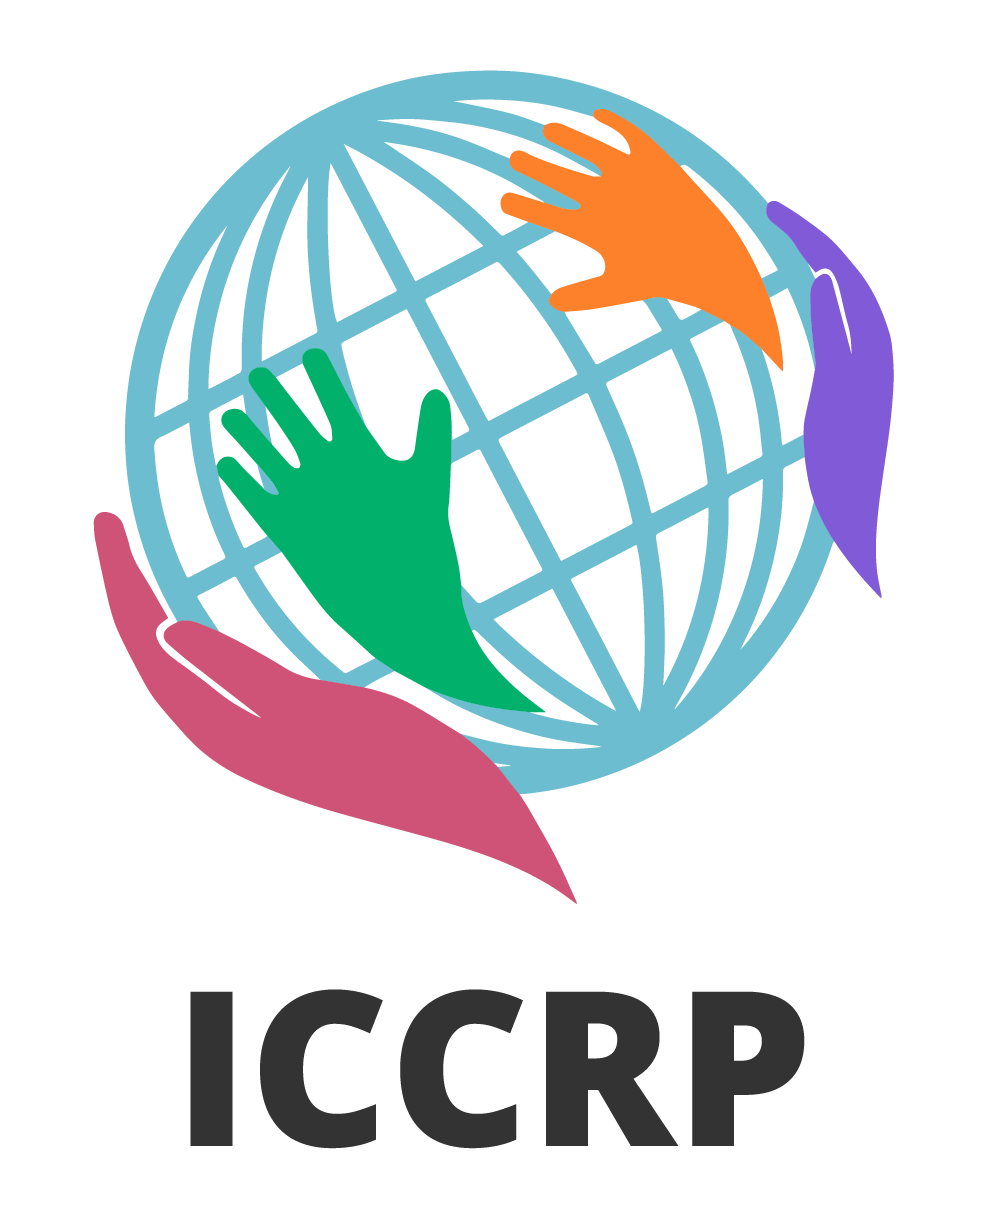 ICCRP logo with acronym